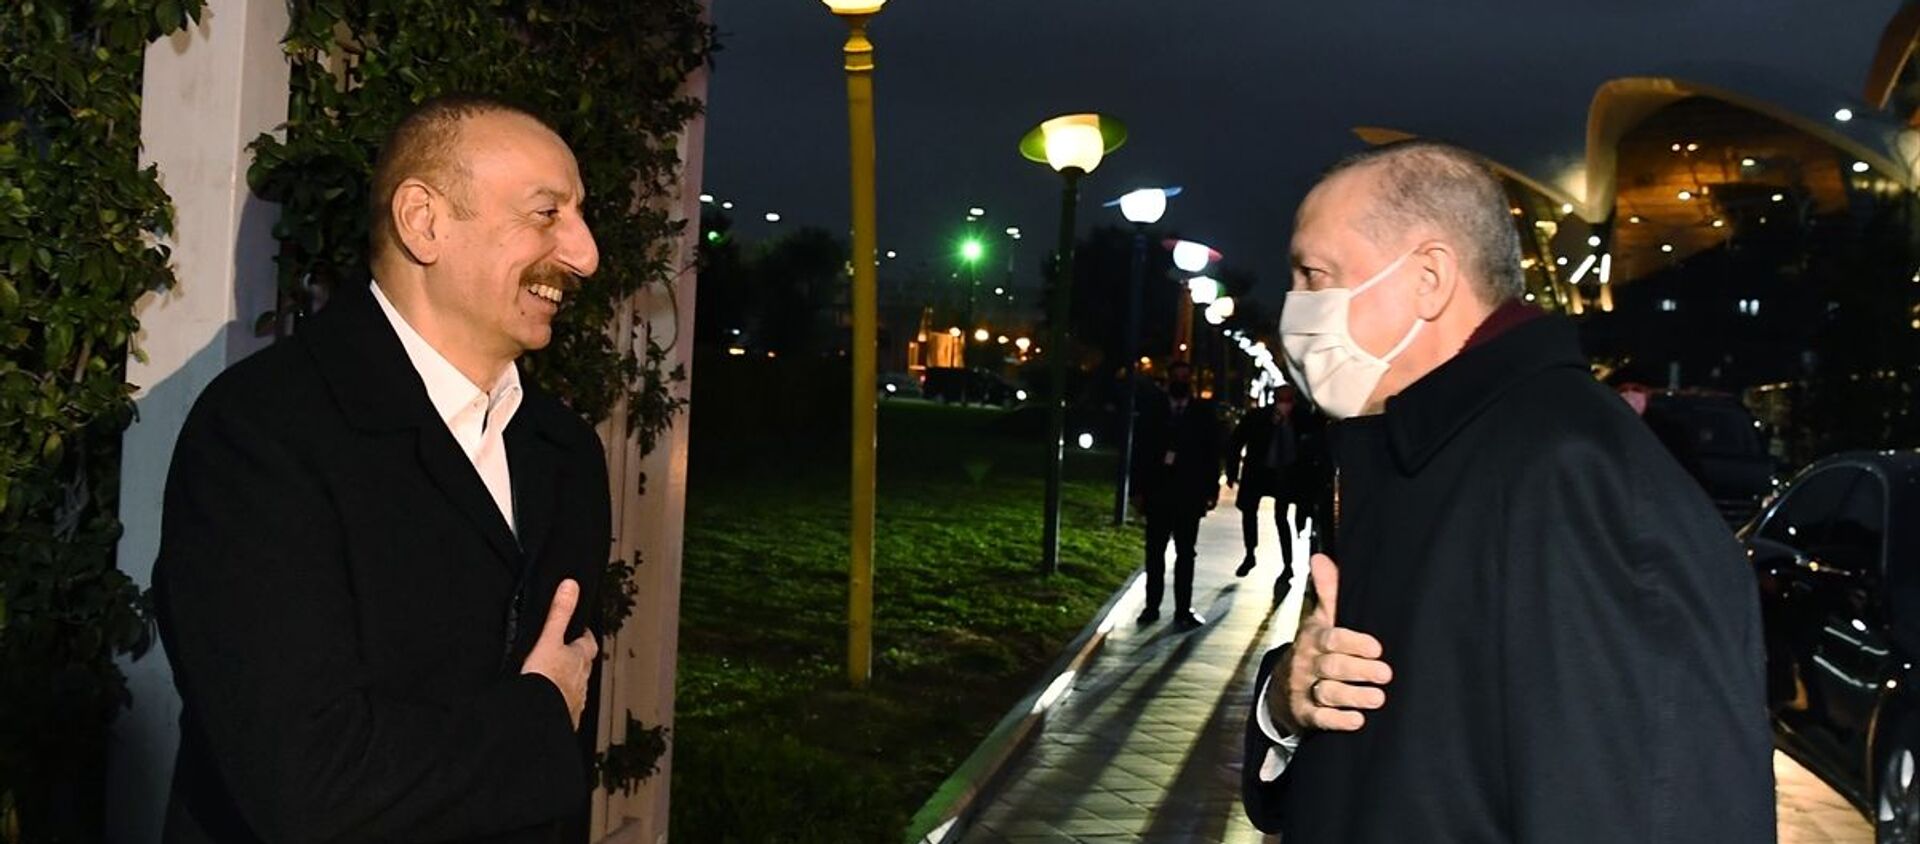 Cumhurbaşkanı Erdoğan, Azerbaycan Cumhurbaşkanı Aliyev ile akşam yemeğinde bir araya geldi. - Sputnik Türkiye, 1920, 24.12.2020